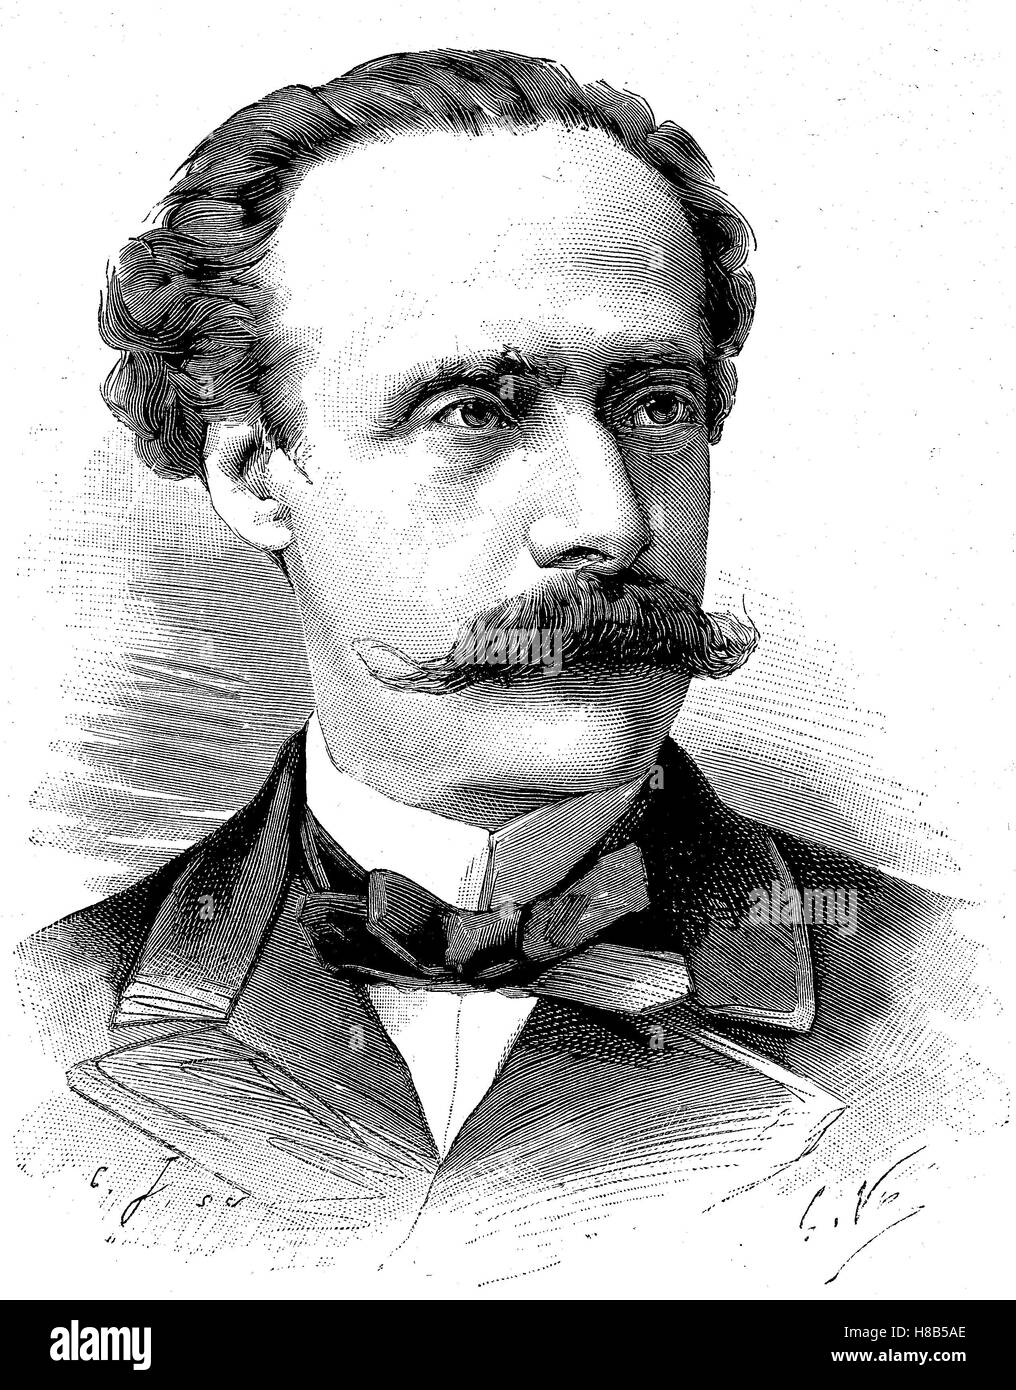 Jose Manuel Balmaceda Emiliano Fernández, 19 de julio de 1840 - 18 de septiembre de 1891, fue el 11º Presidente de Chile desde el 18 de septiembre de 1886 al 29 de agosto de 1891, la xilografía desde 1892 Foto de stock